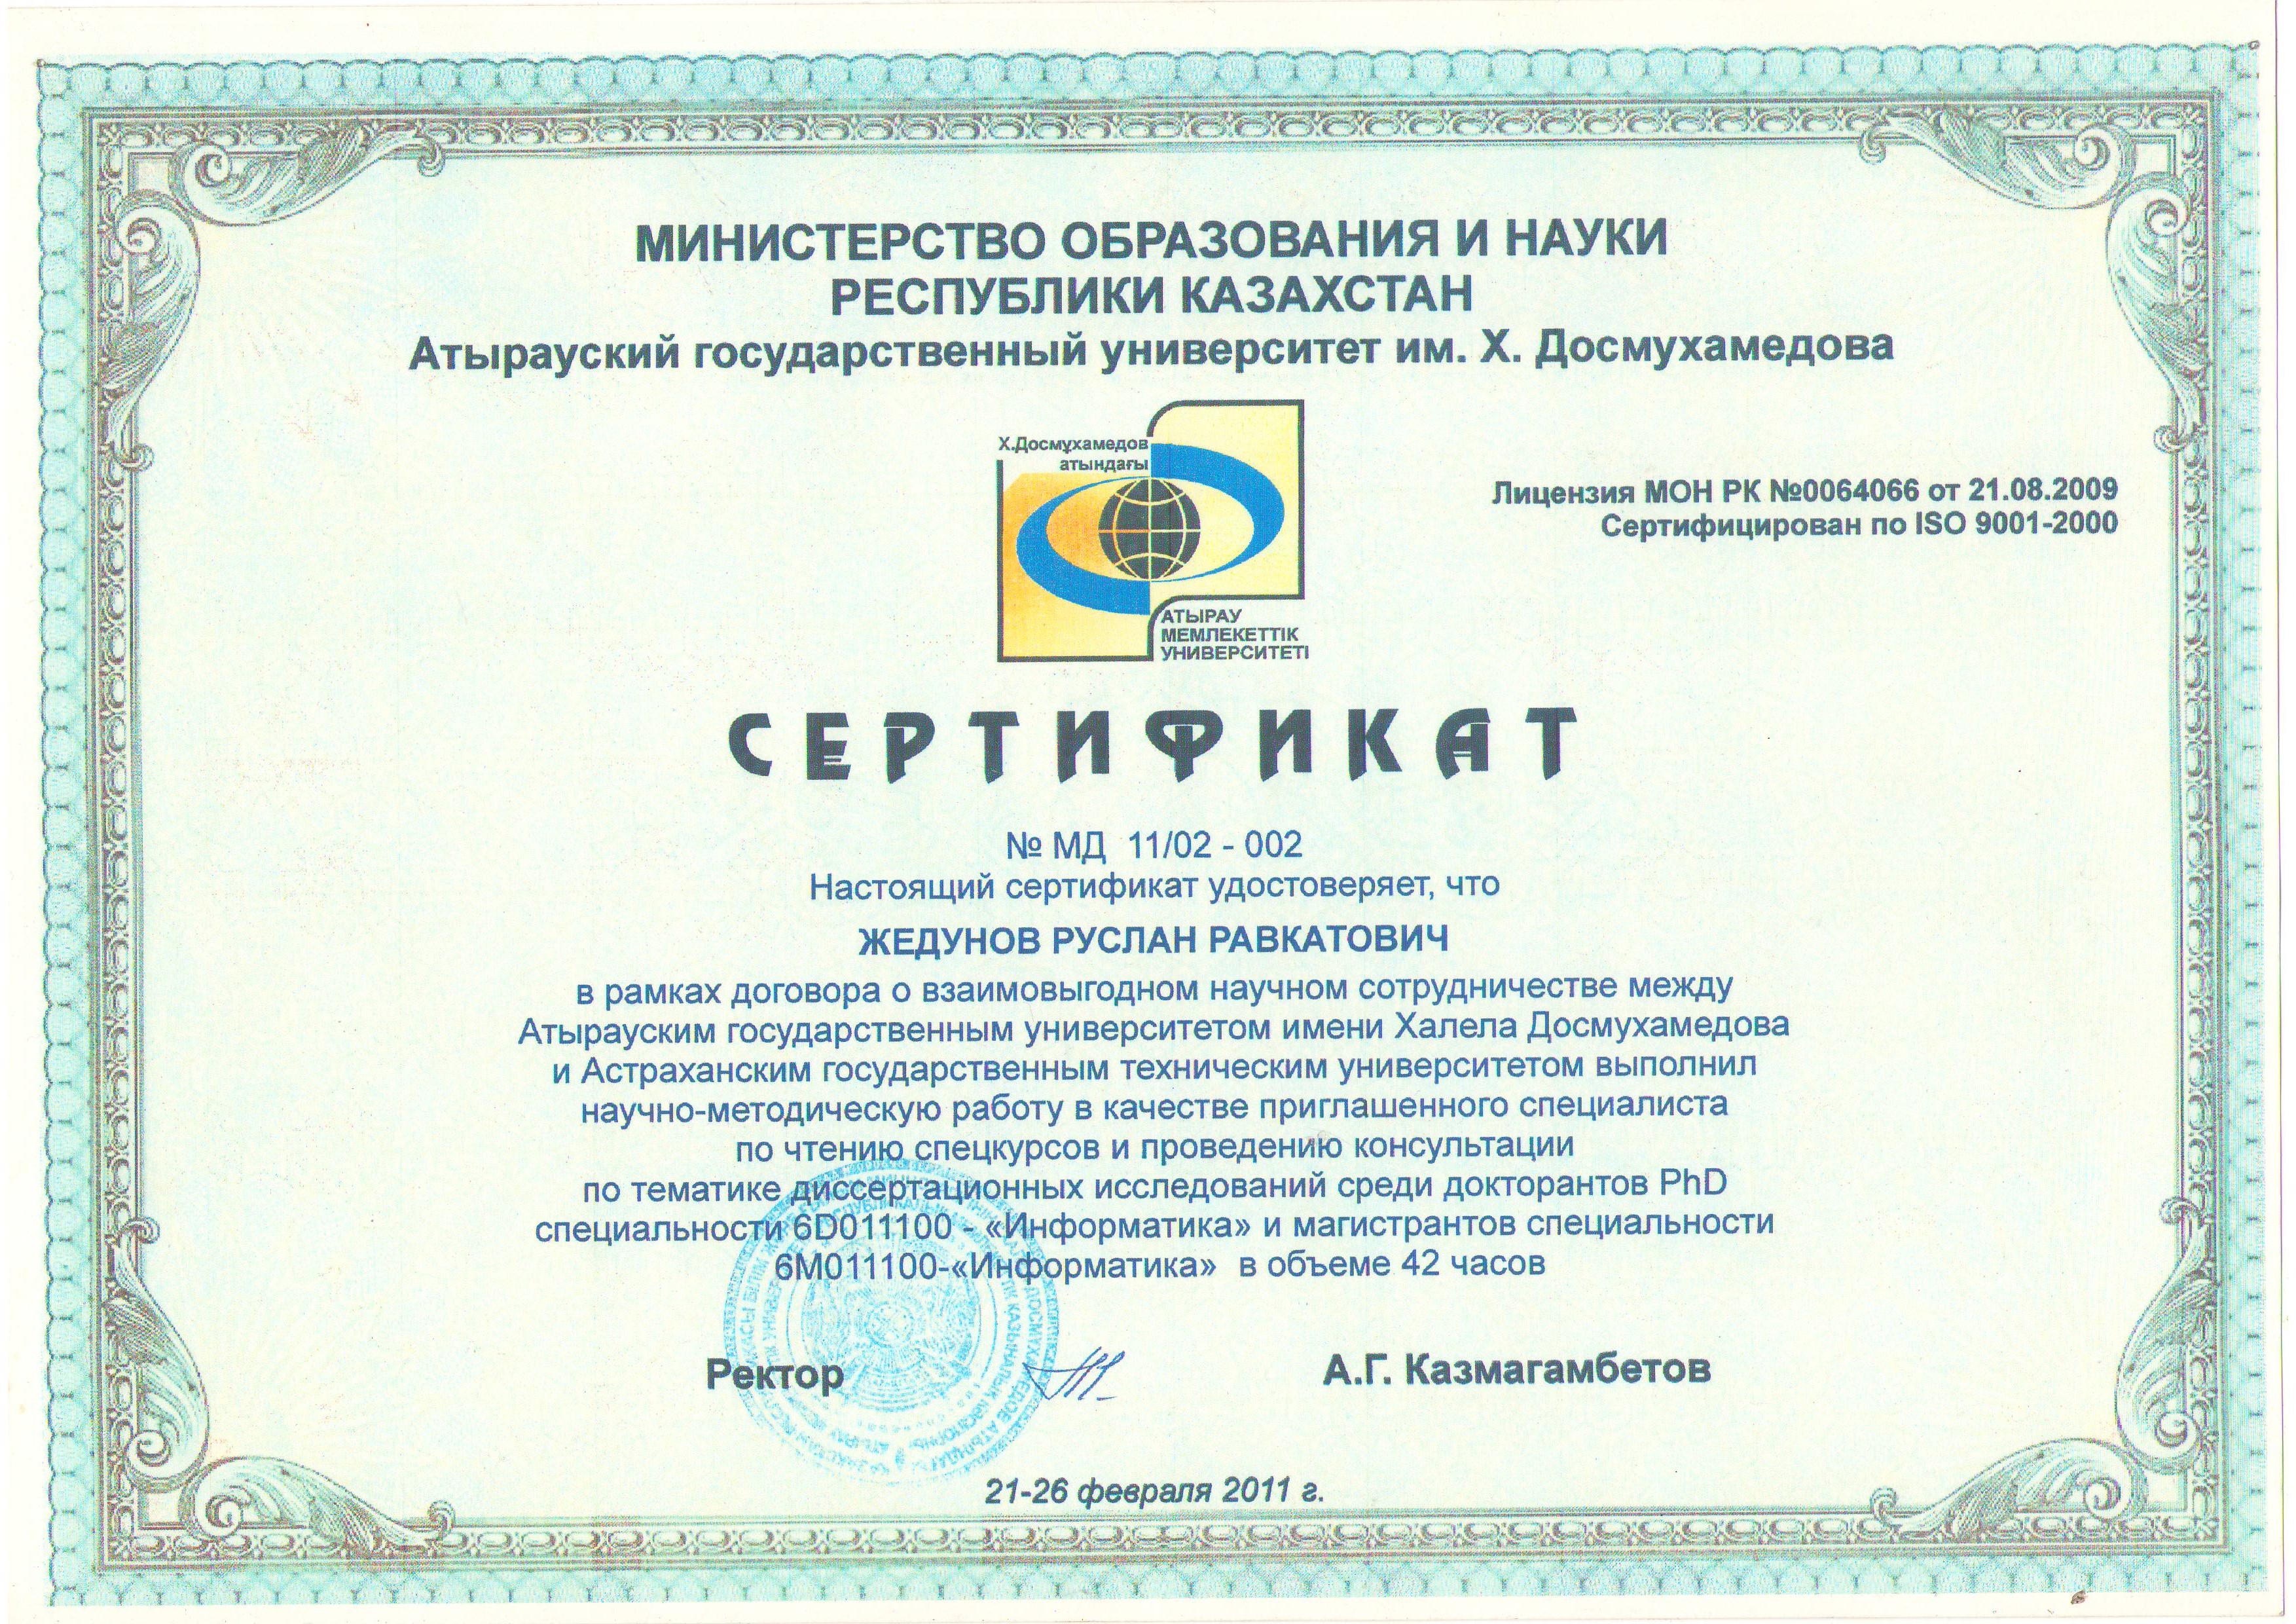 Сертификат. Сертификат портал знания. Сертификаты на сайте.